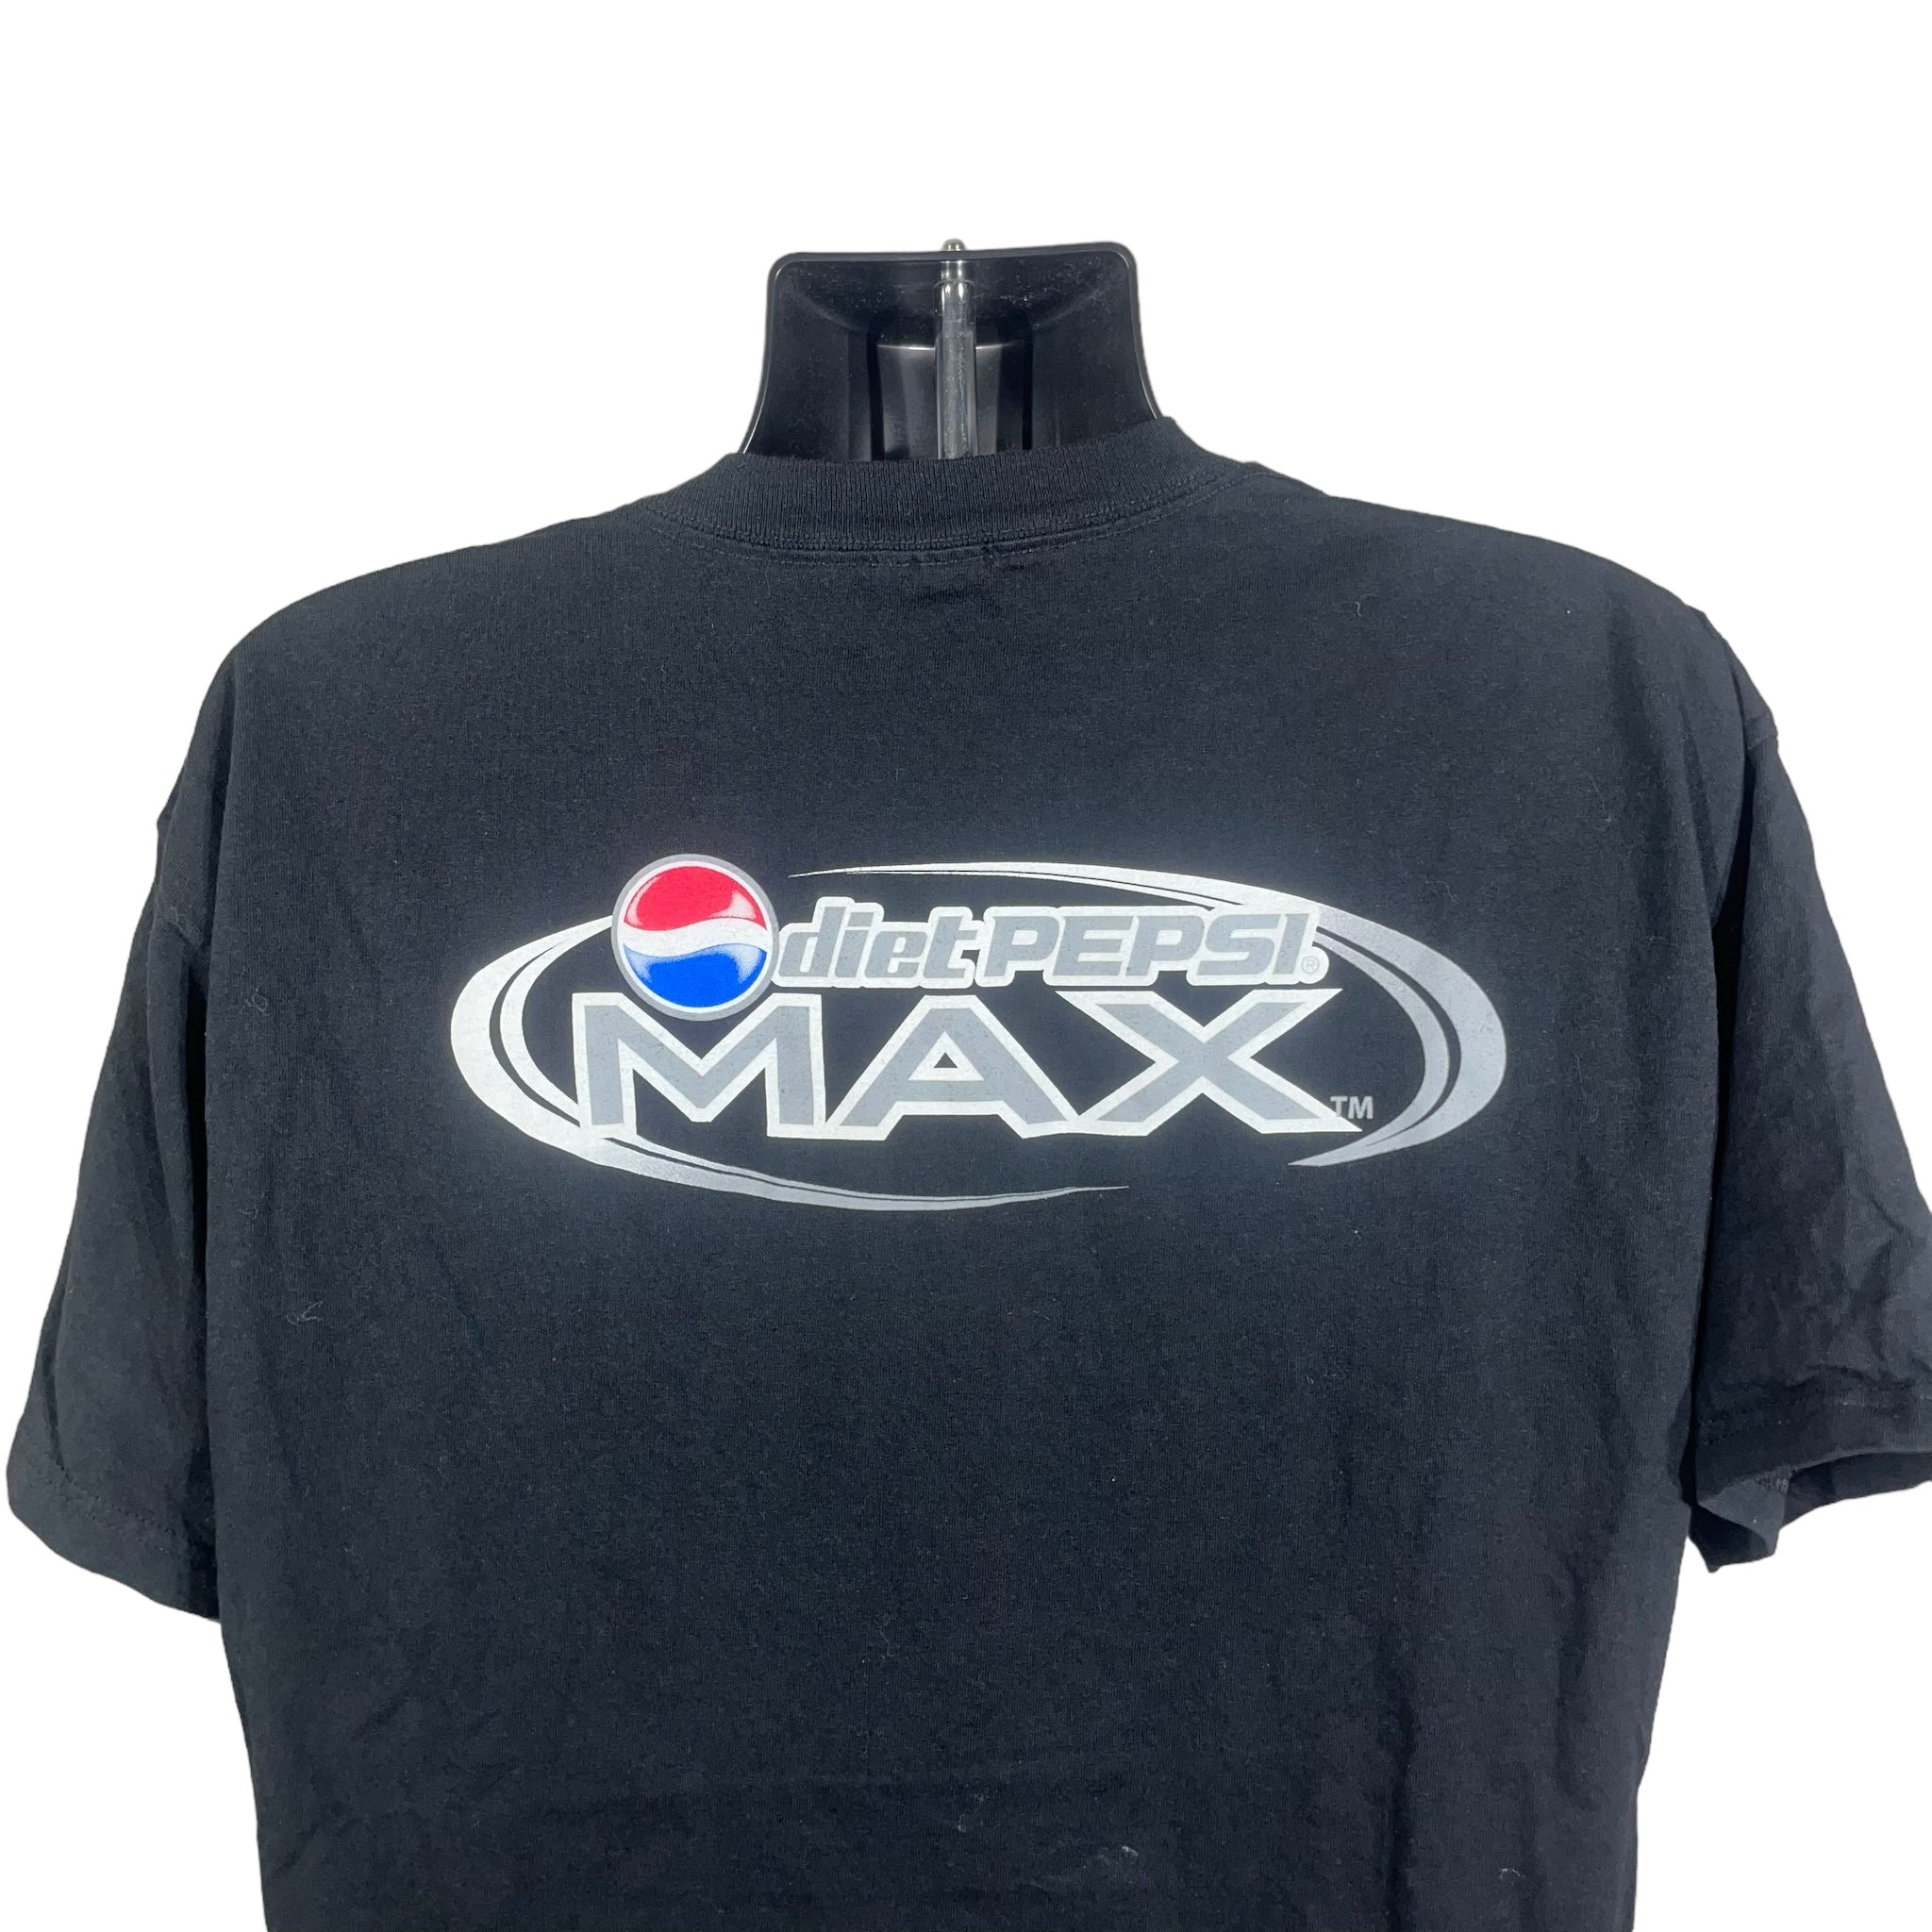 Vintage  Diet Pepsi Max Mullet Tee 2000s